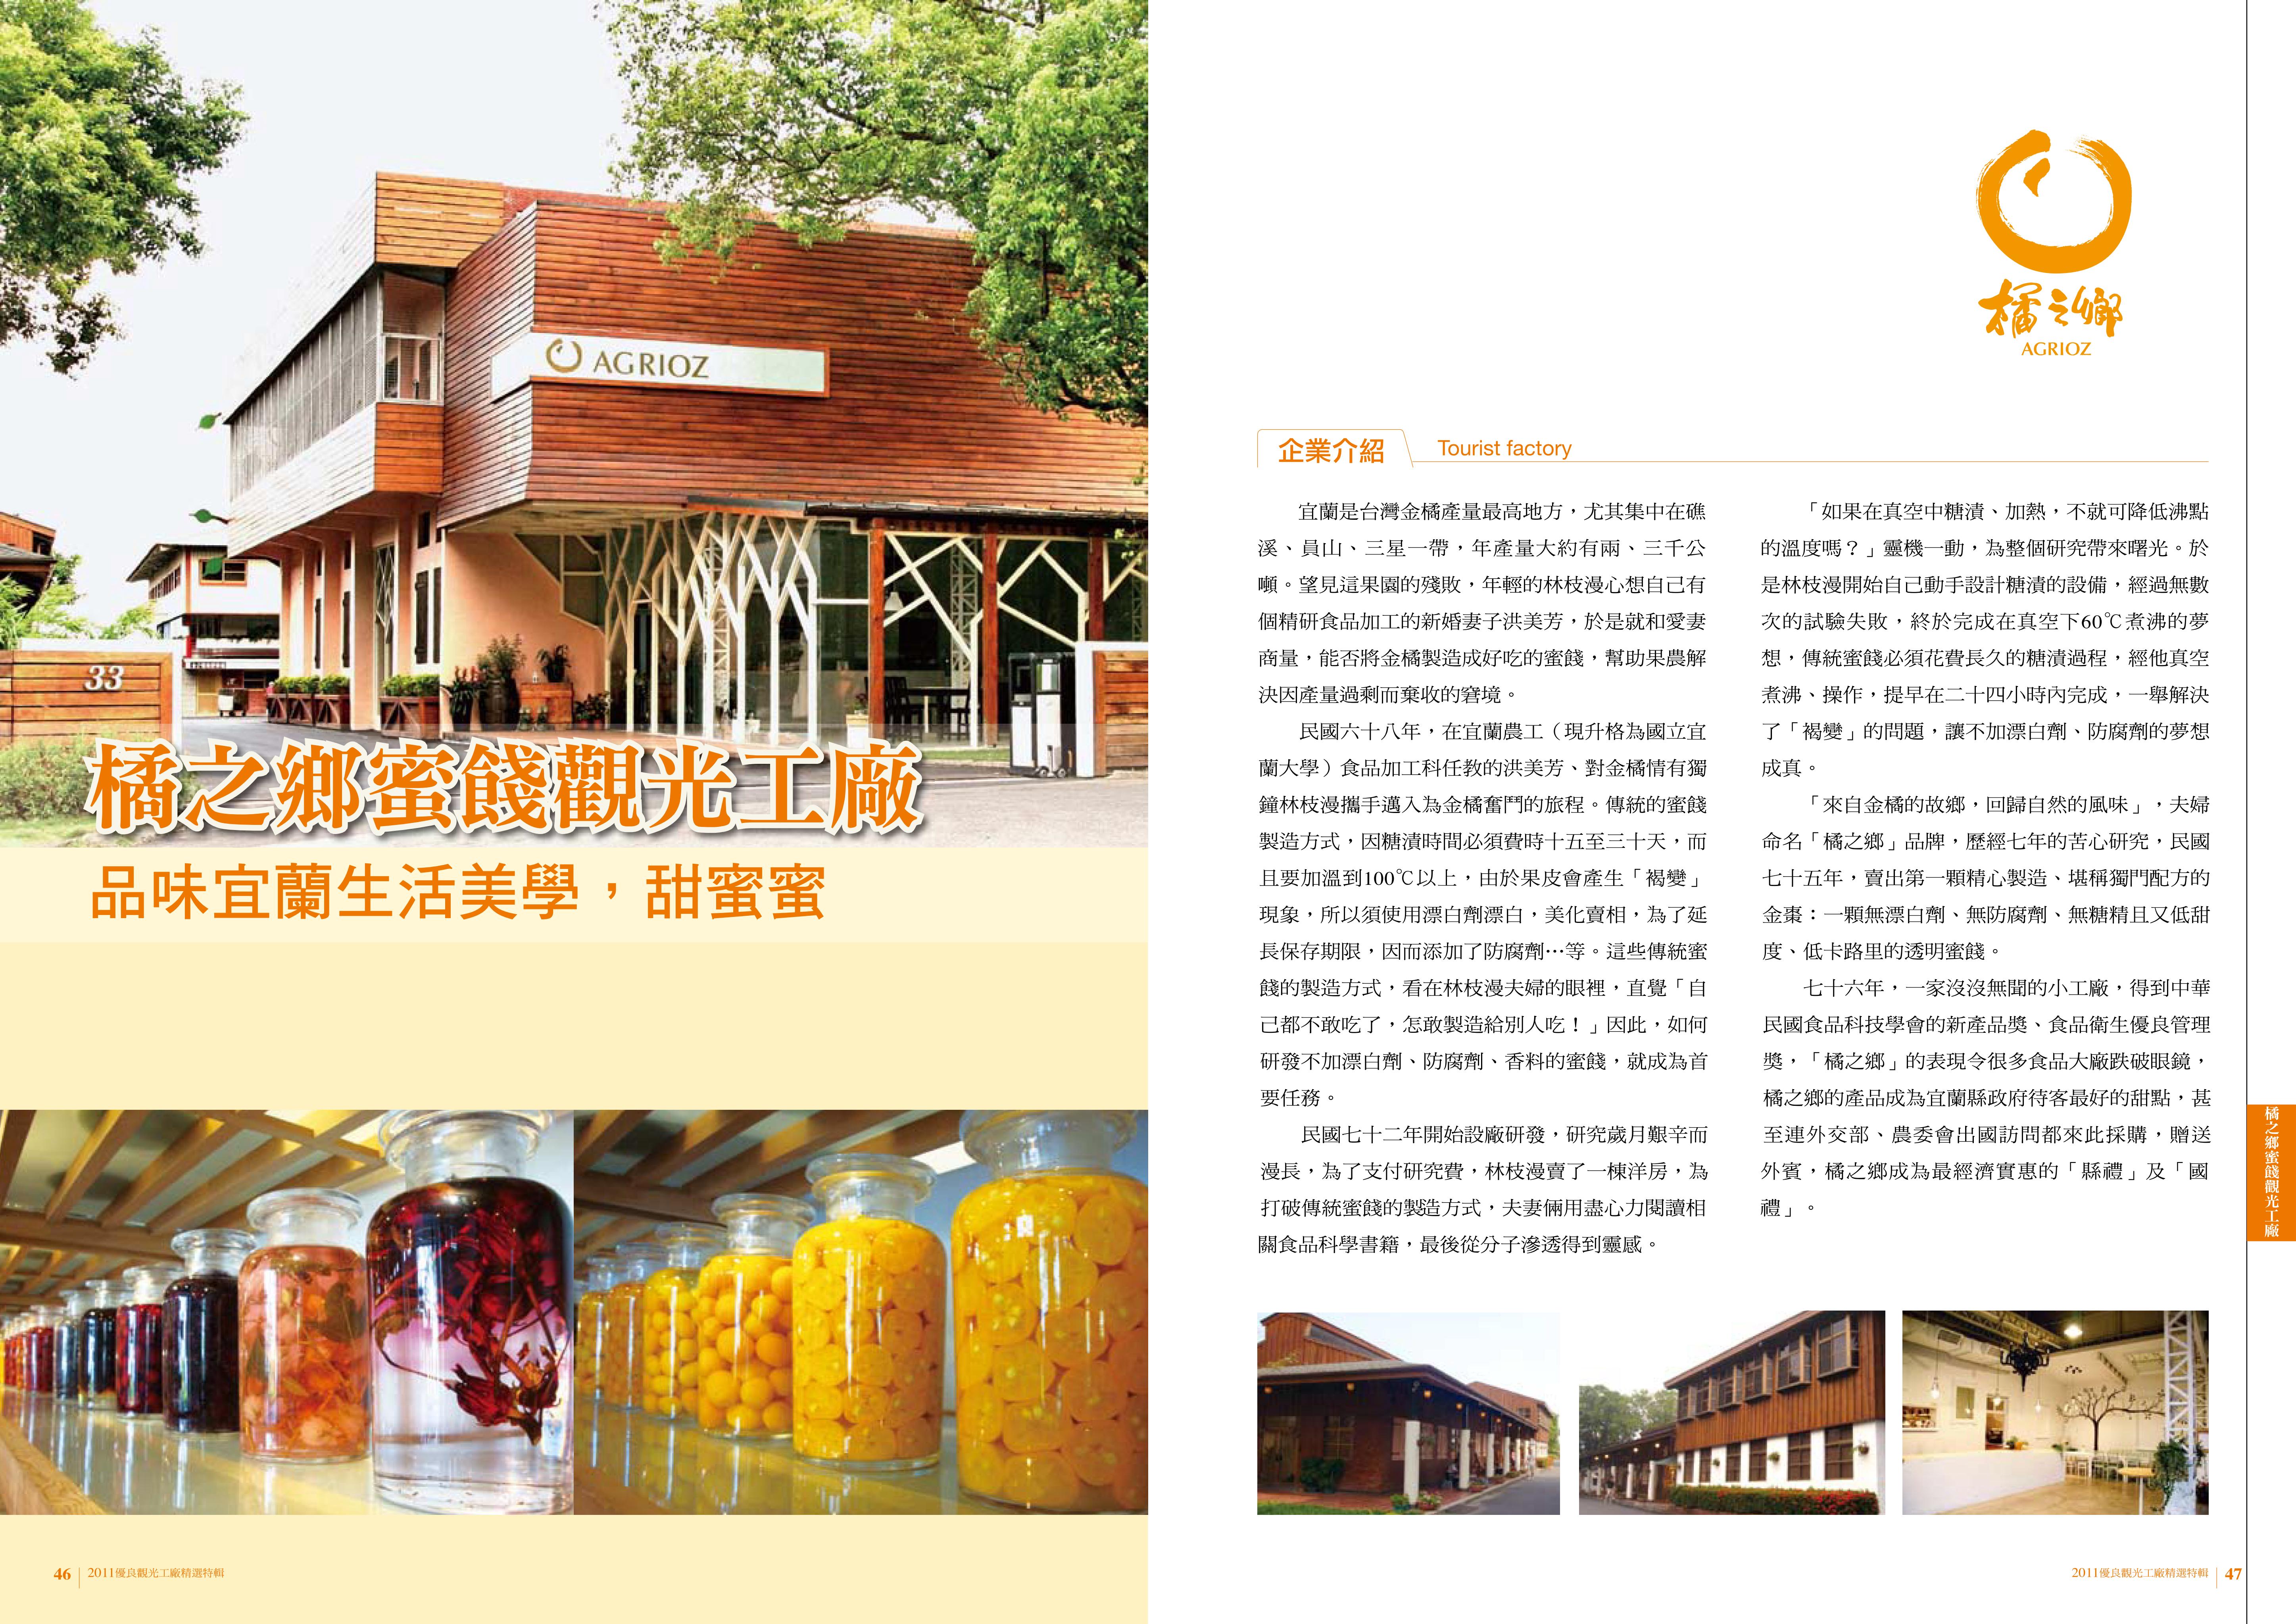 2011年度廠商專訪-橘之鄉蜜餞觀光工廠-企業介紹